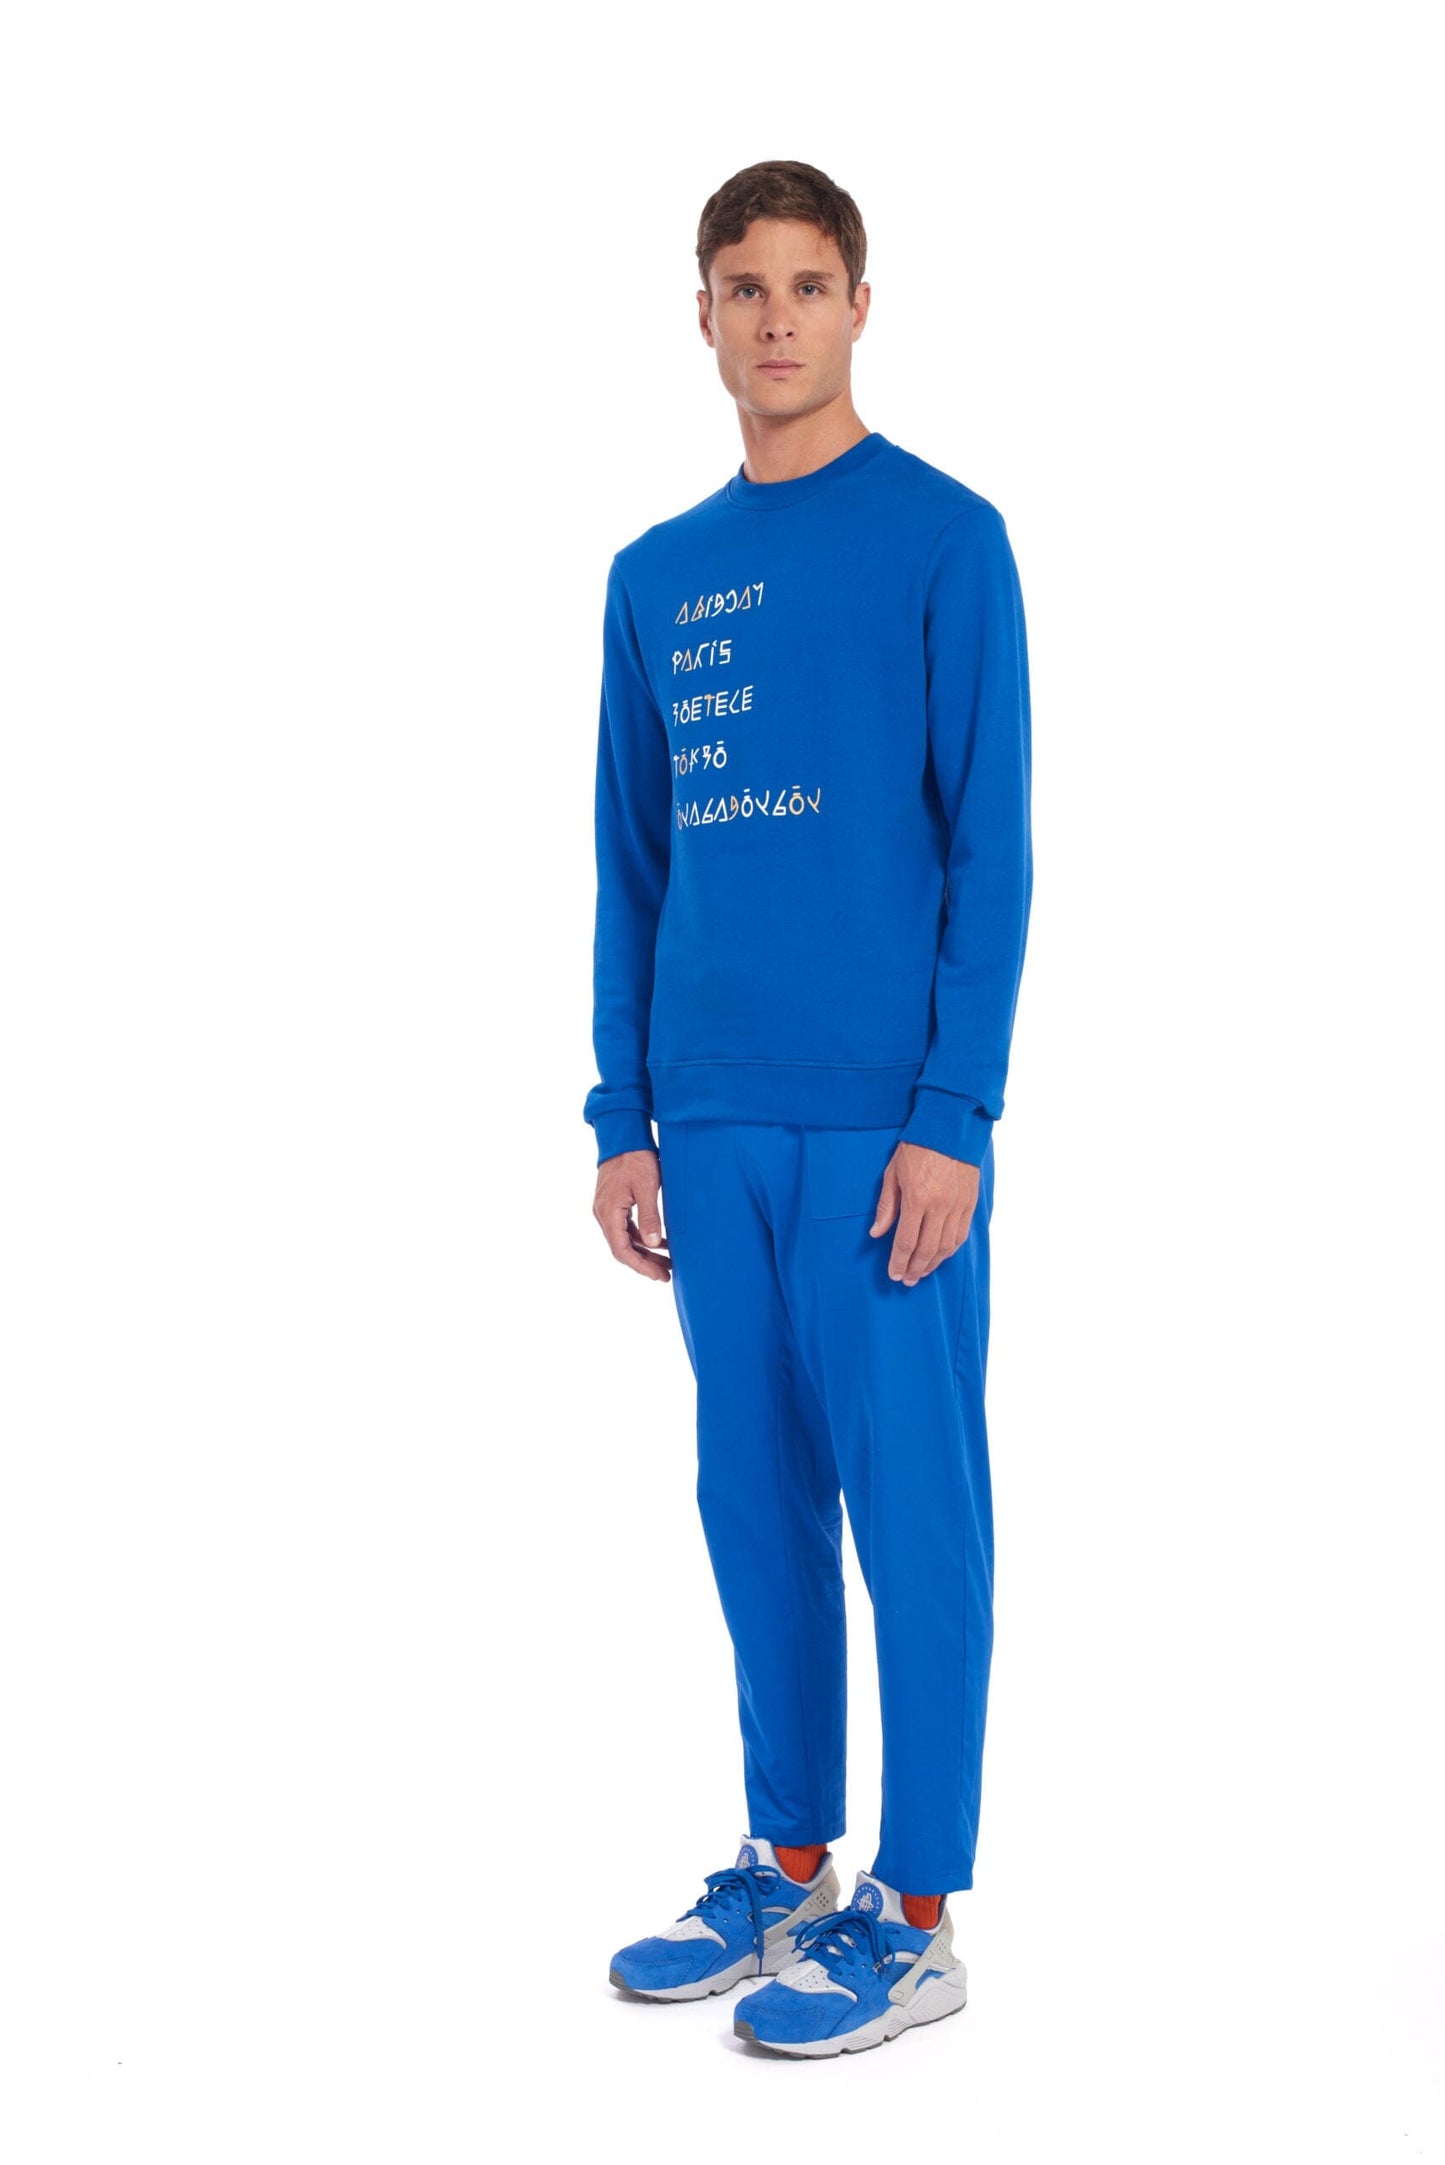 Fakir - Blue Sweater LaurenceAirline 